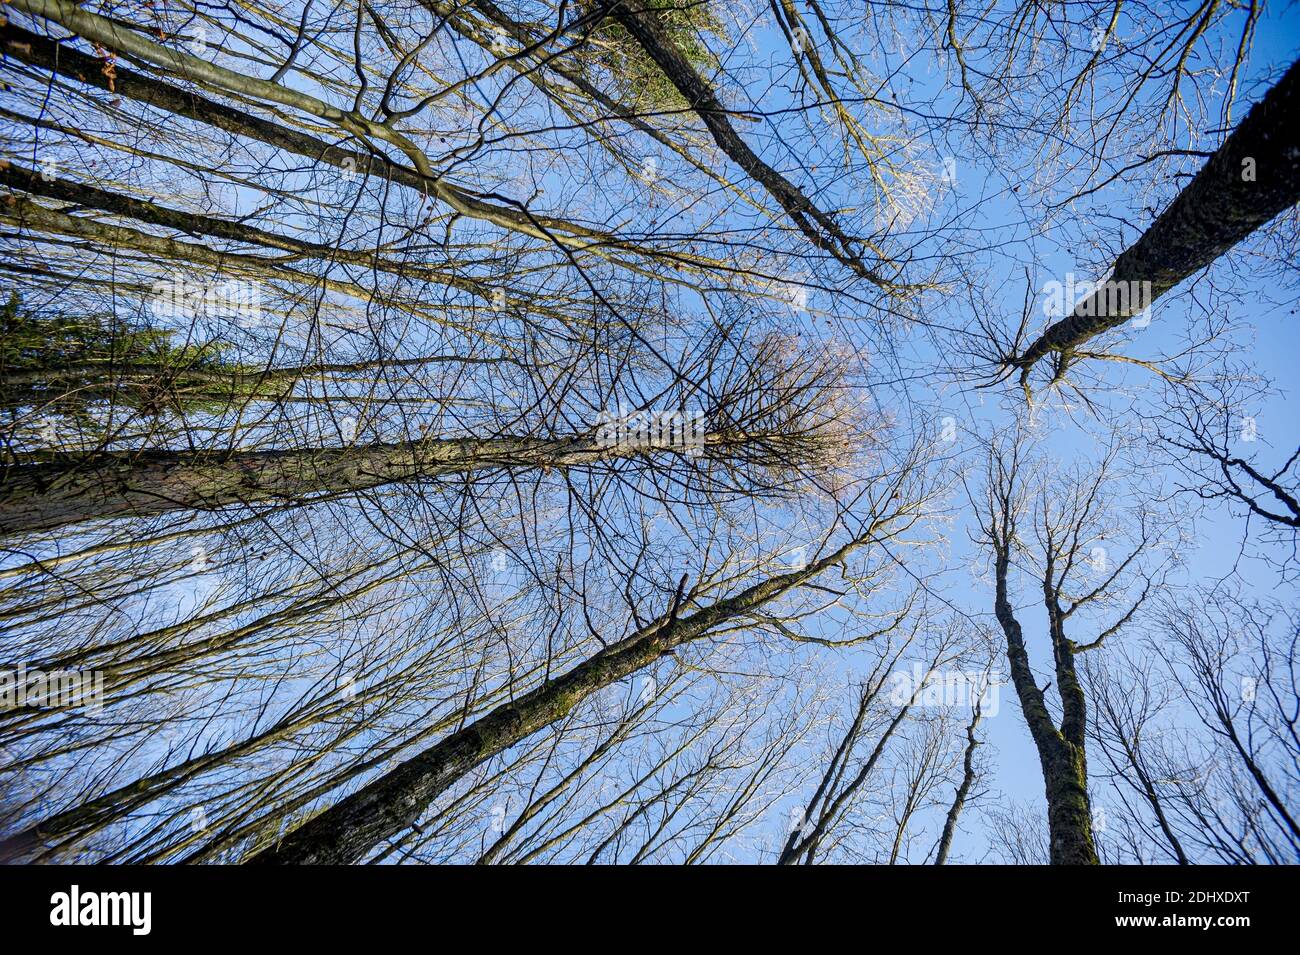 Vista della foresta in inverno. Effetti prospettici, gli alberi fotografati sullo sfondo con un obiettivo grandangolare sembrano convergere sul cielo blu. Foto Stock